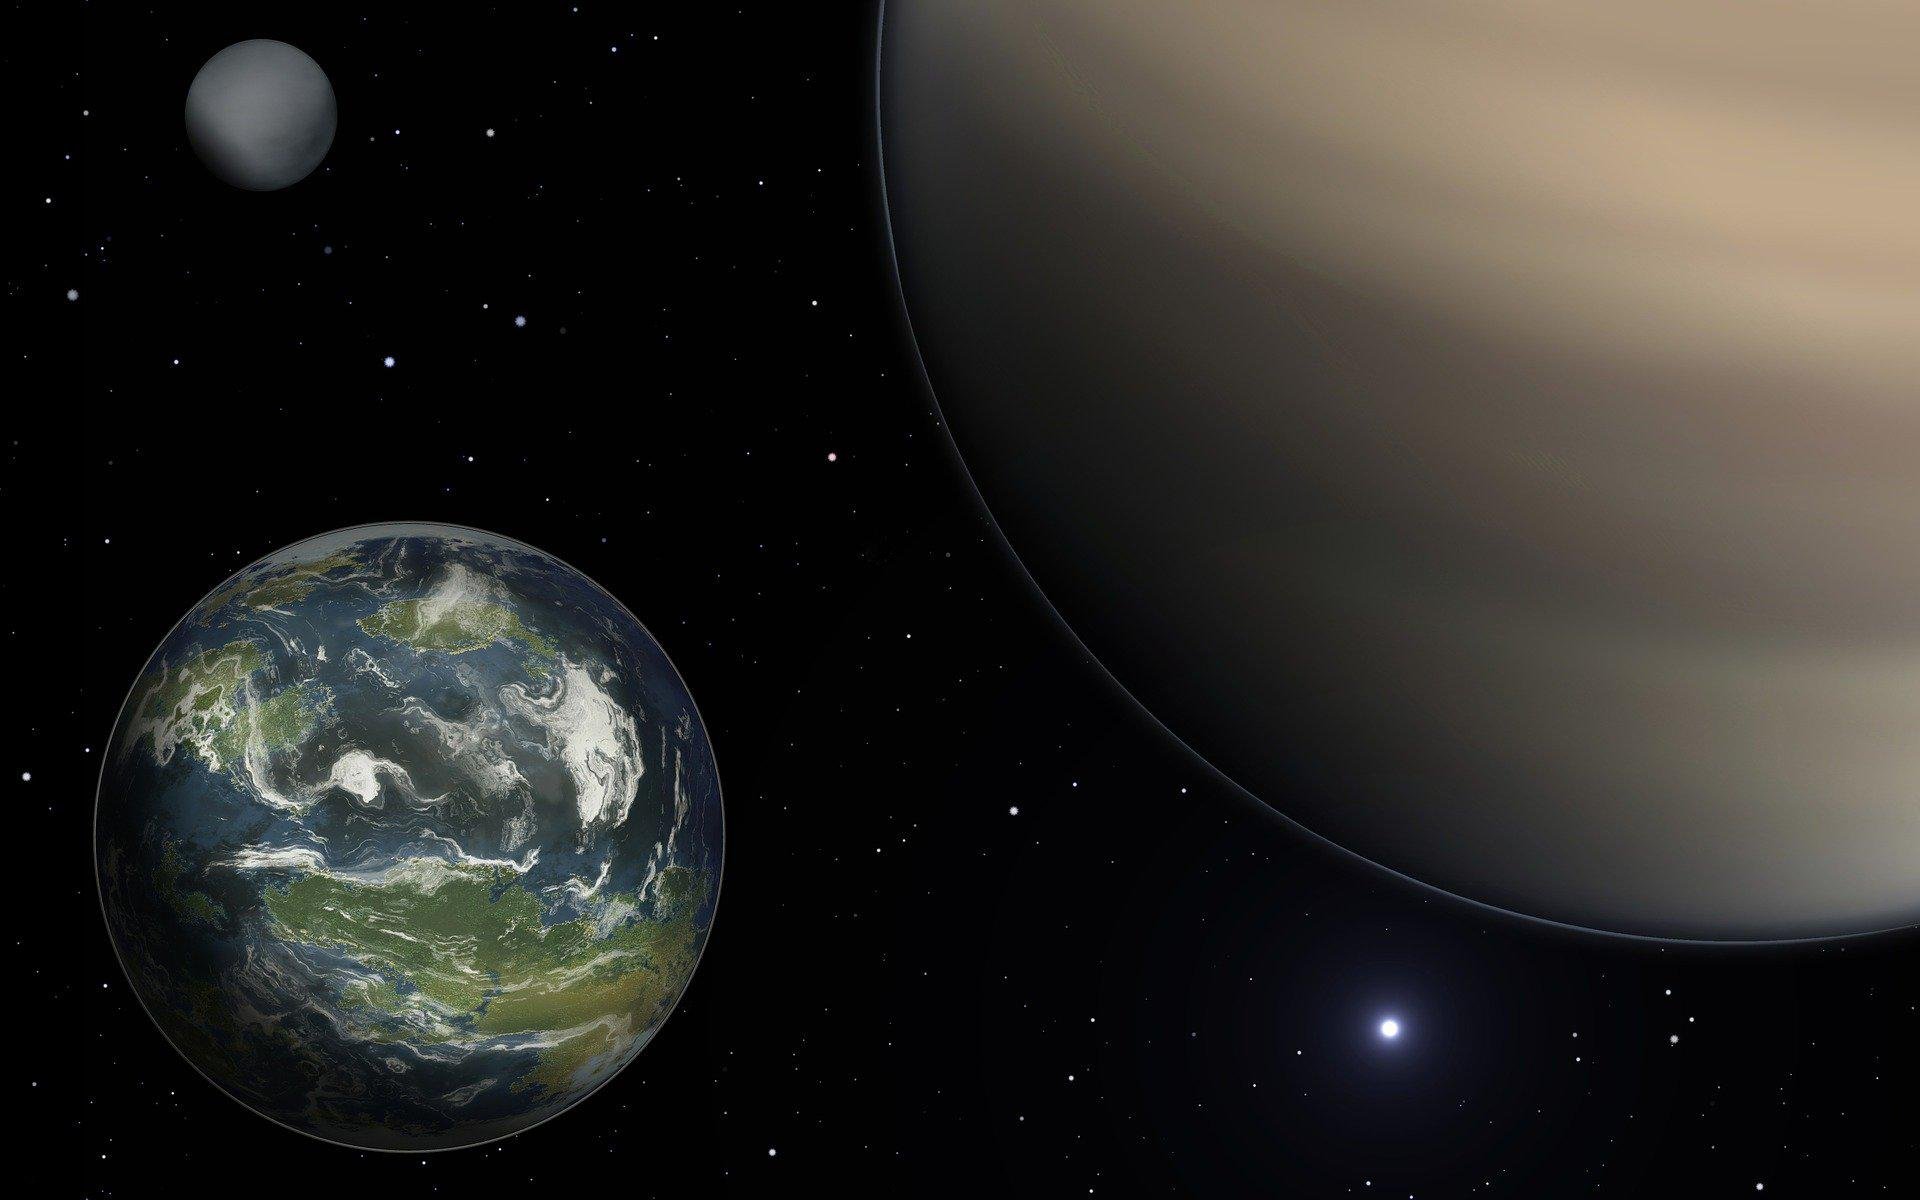 Cientistas querem encontrar planetas parecidos ao nosso - com condições para abrigar vida (Fonte: Pixabay/ChadoNihi)